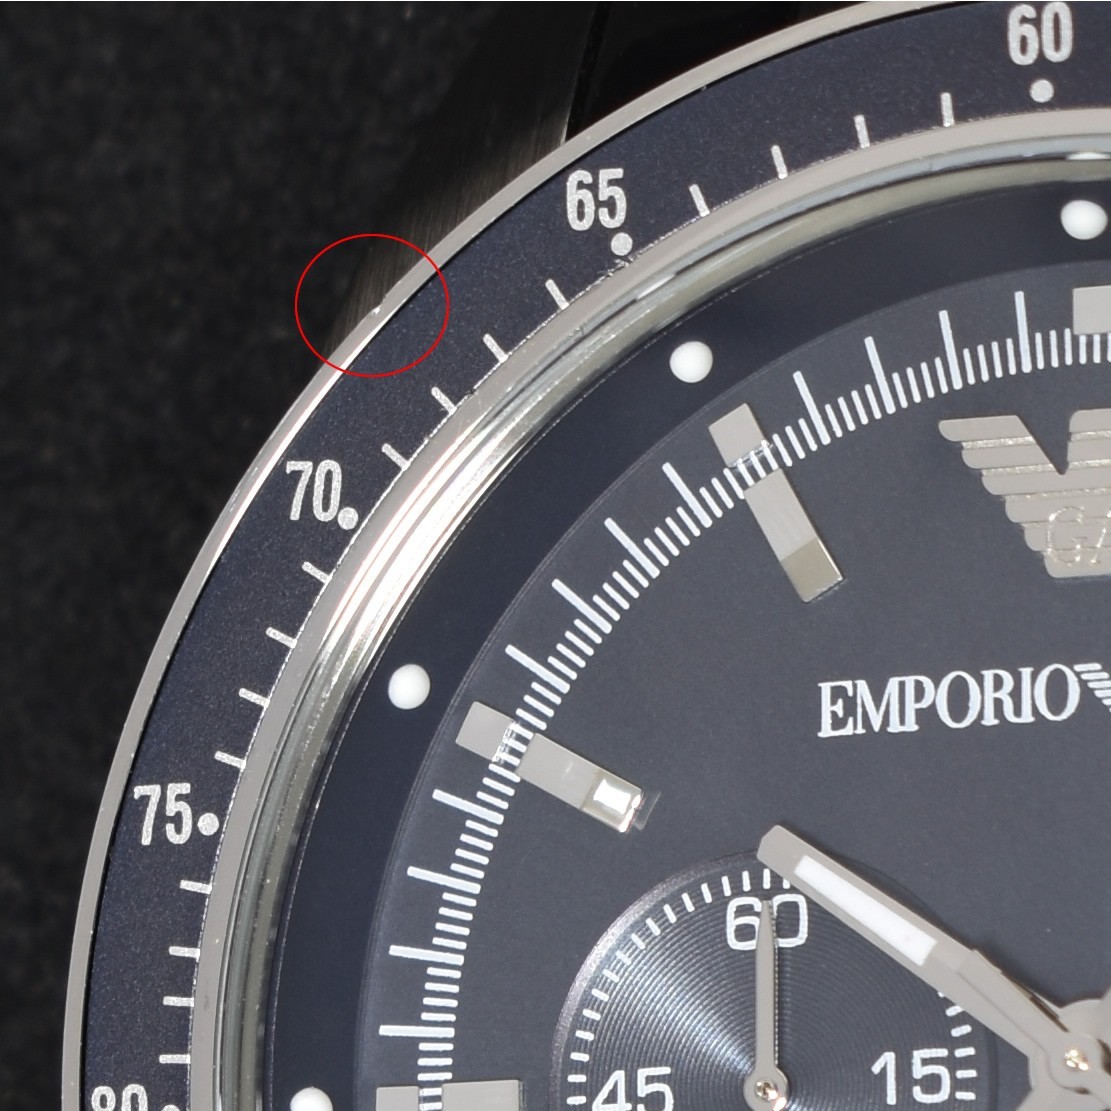  【訳あり】エンポリオアルマーニ 腕時計 メンズ EMPORIO ARMANIクロノグラフ AR6072 ブルー アルマーニ ステンレスベルト クオーツ 中古品_画像9